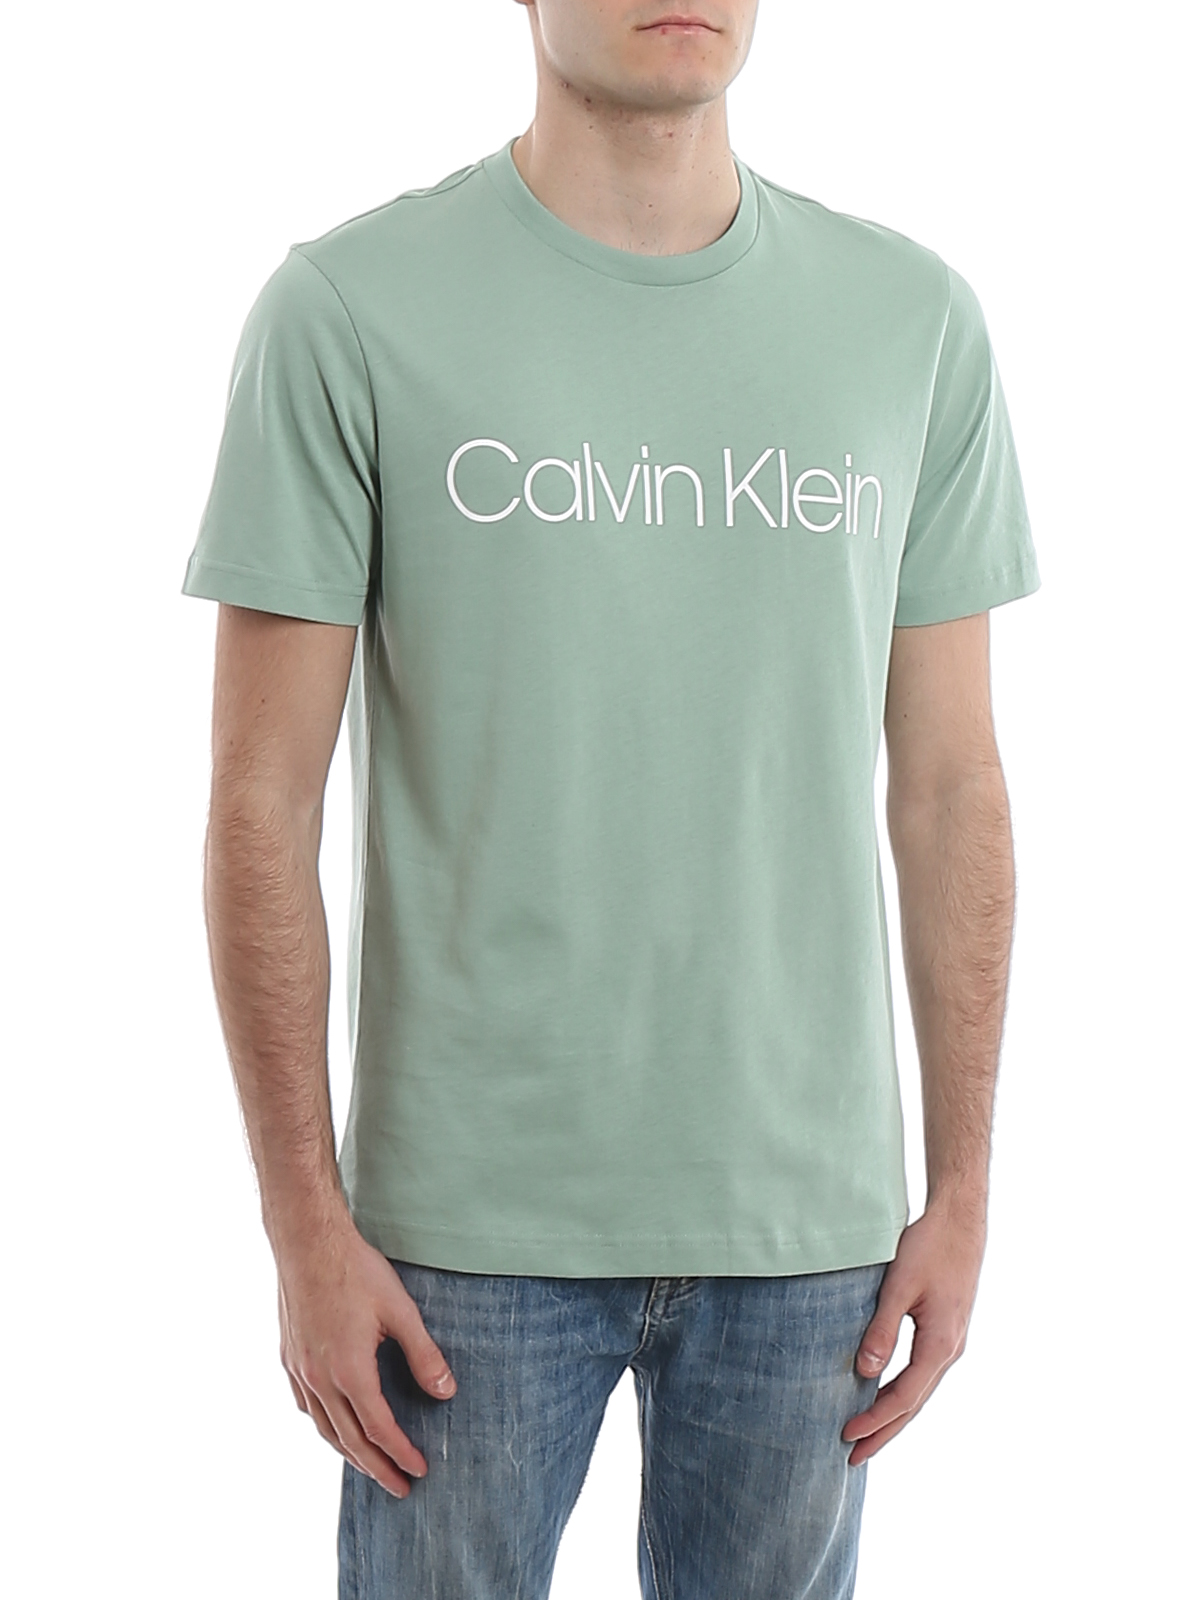 calvin klein shirt online